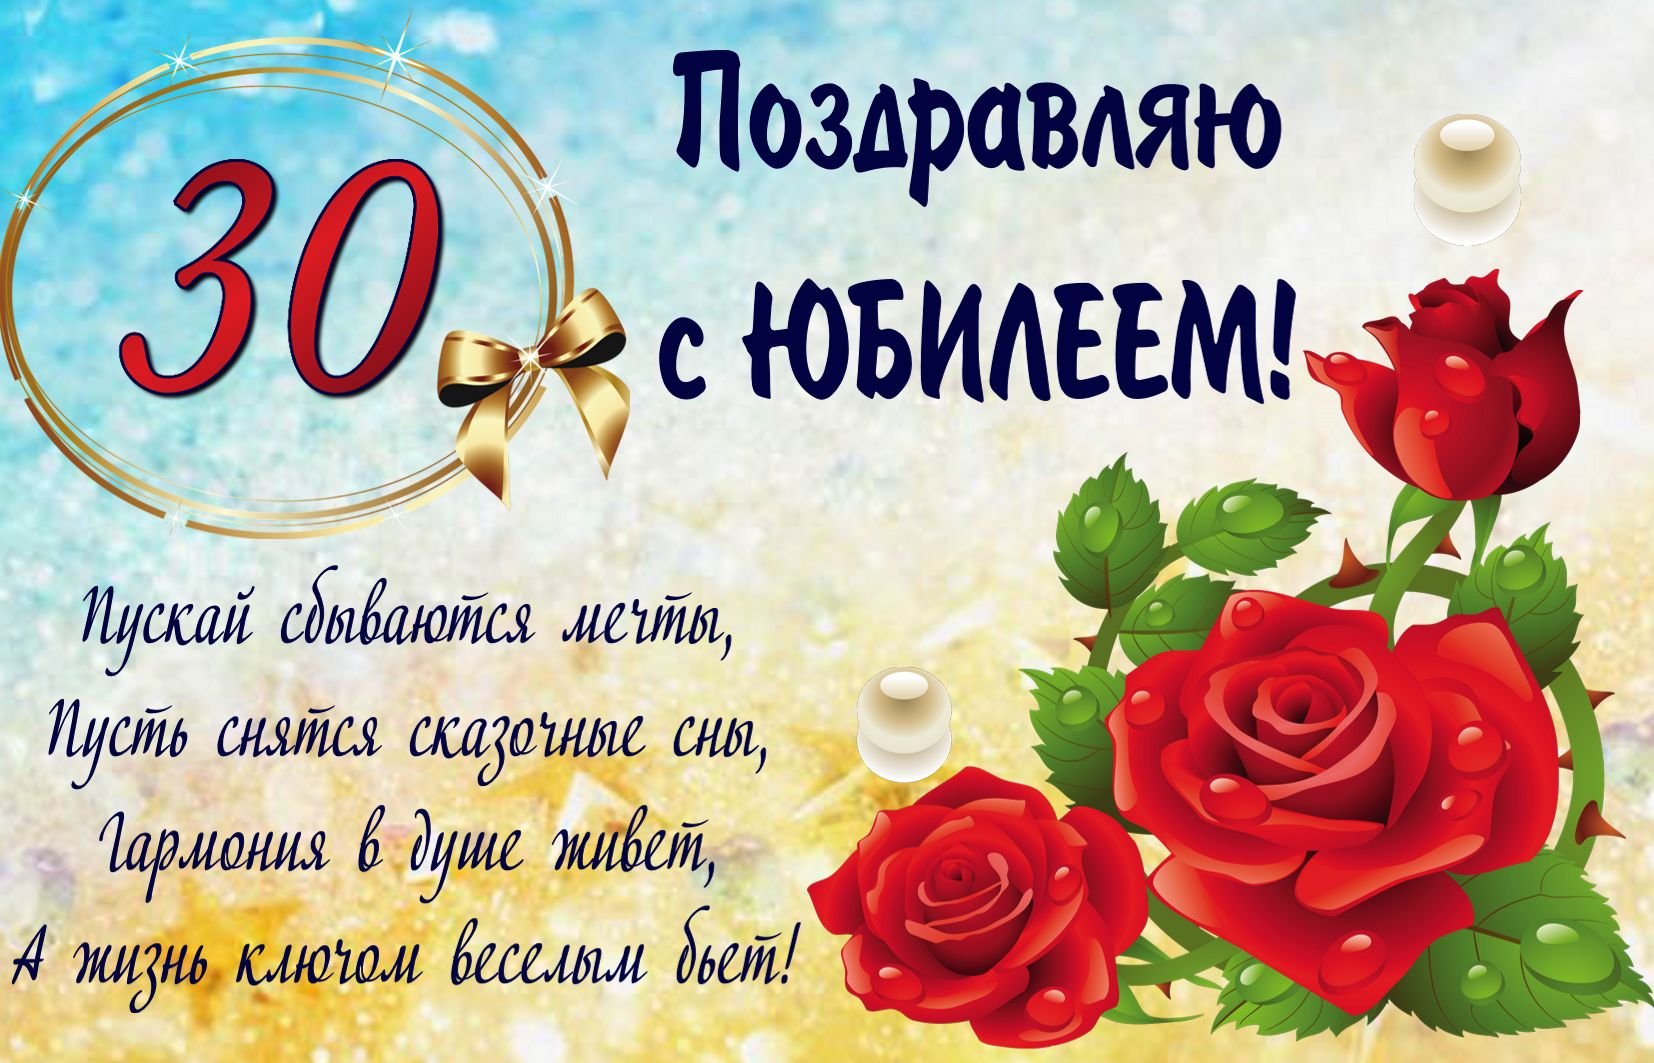 Открытка С Днем Юбилея! 30 лет средняя х мм. купить оптом в Томске по цене 15,15 руб.